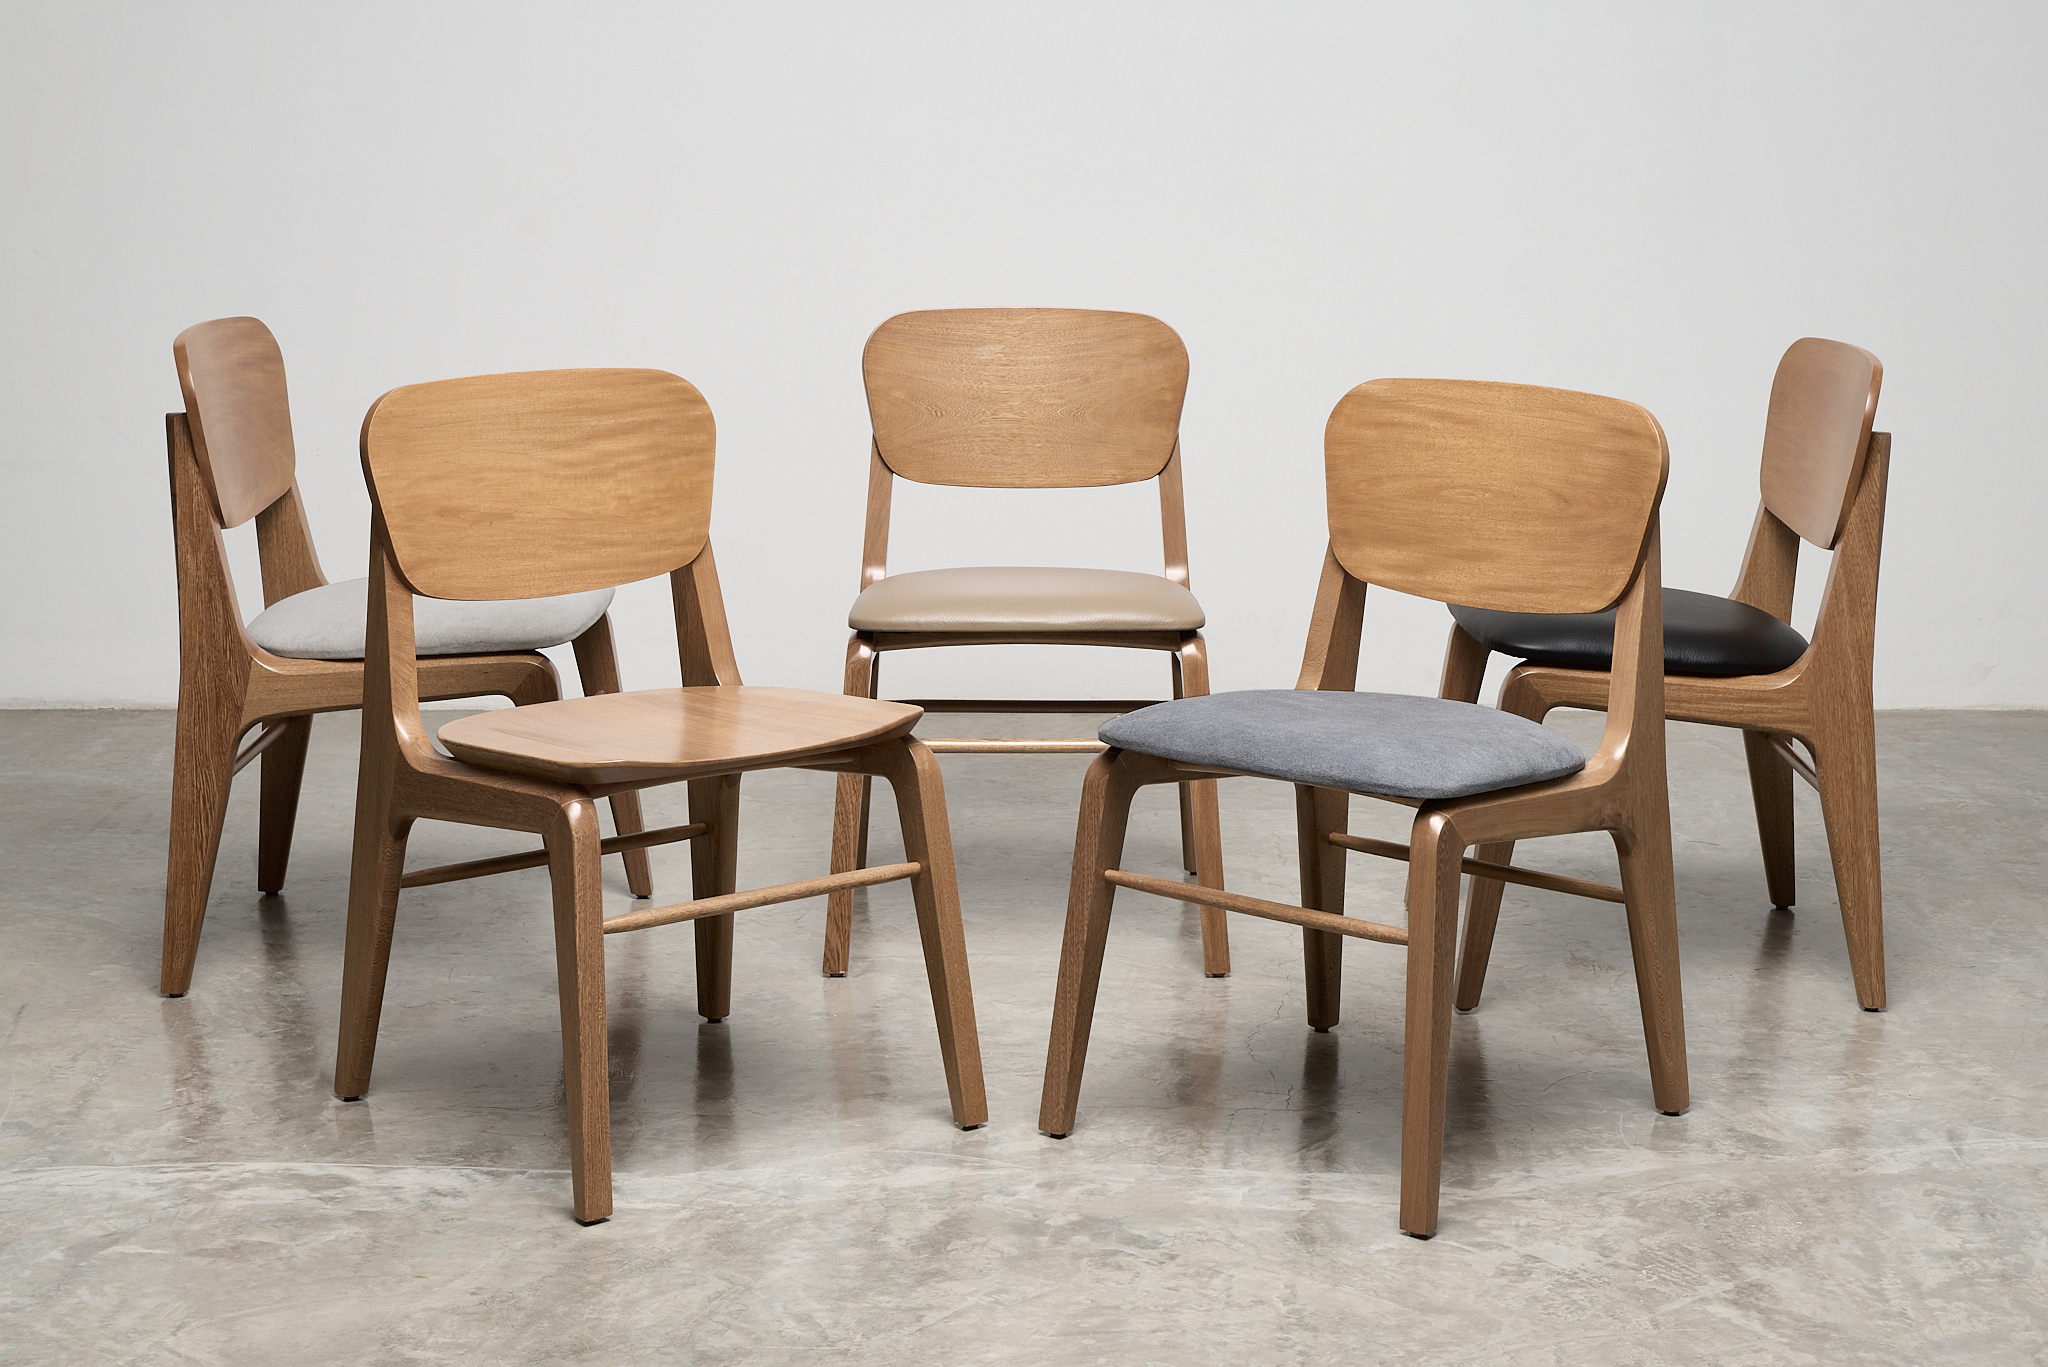 sillas de madera sin descansabrazos con asientos en diferentes colores